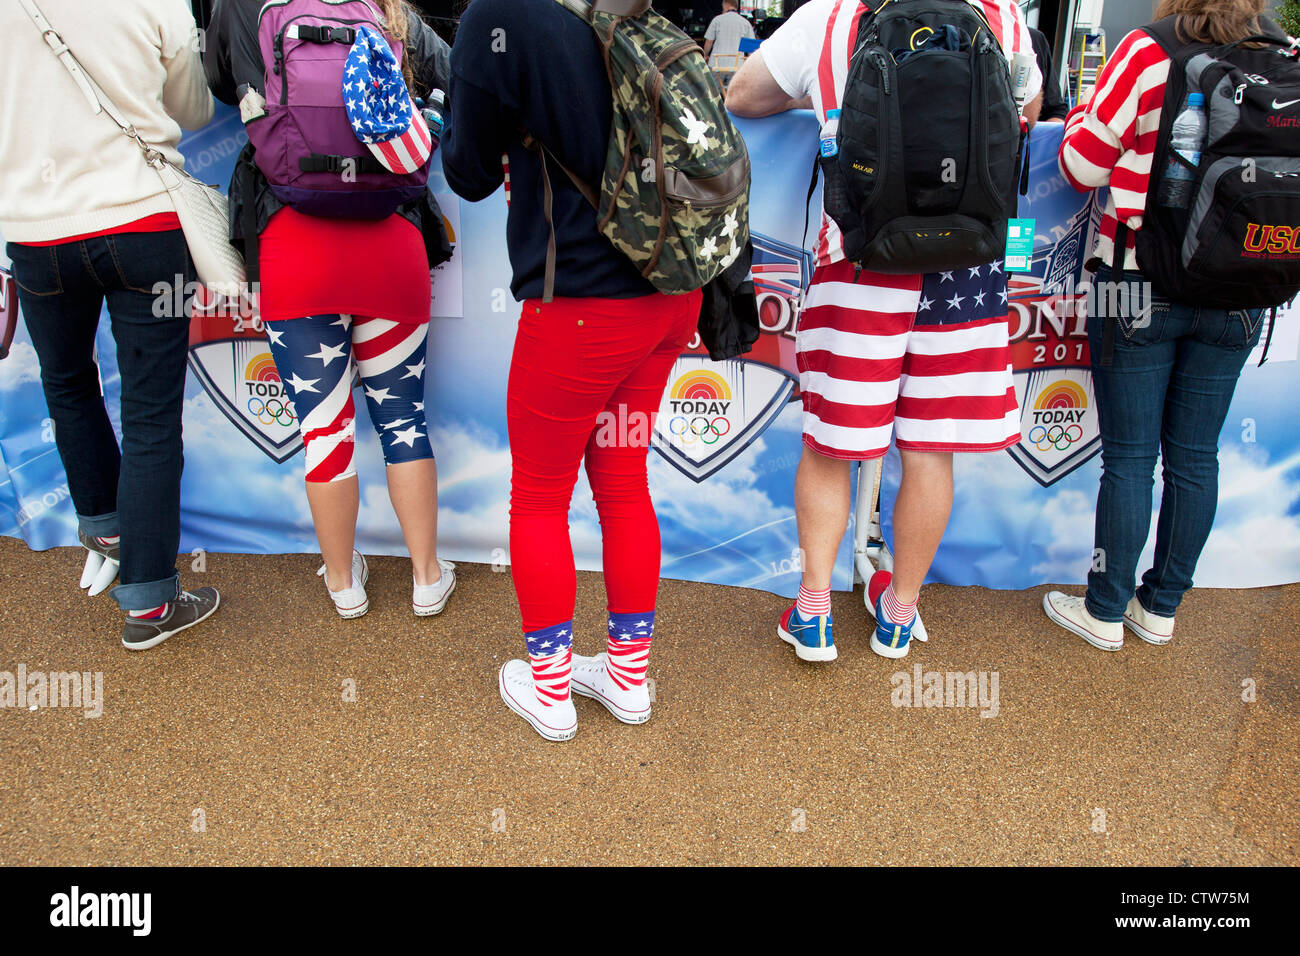 Londra 2012 Parco Olimpico di Stratford. I fan del Team USA sono abbondanti a parco. Indossare a stelle e strisce, la bandiera di America Foto Stock